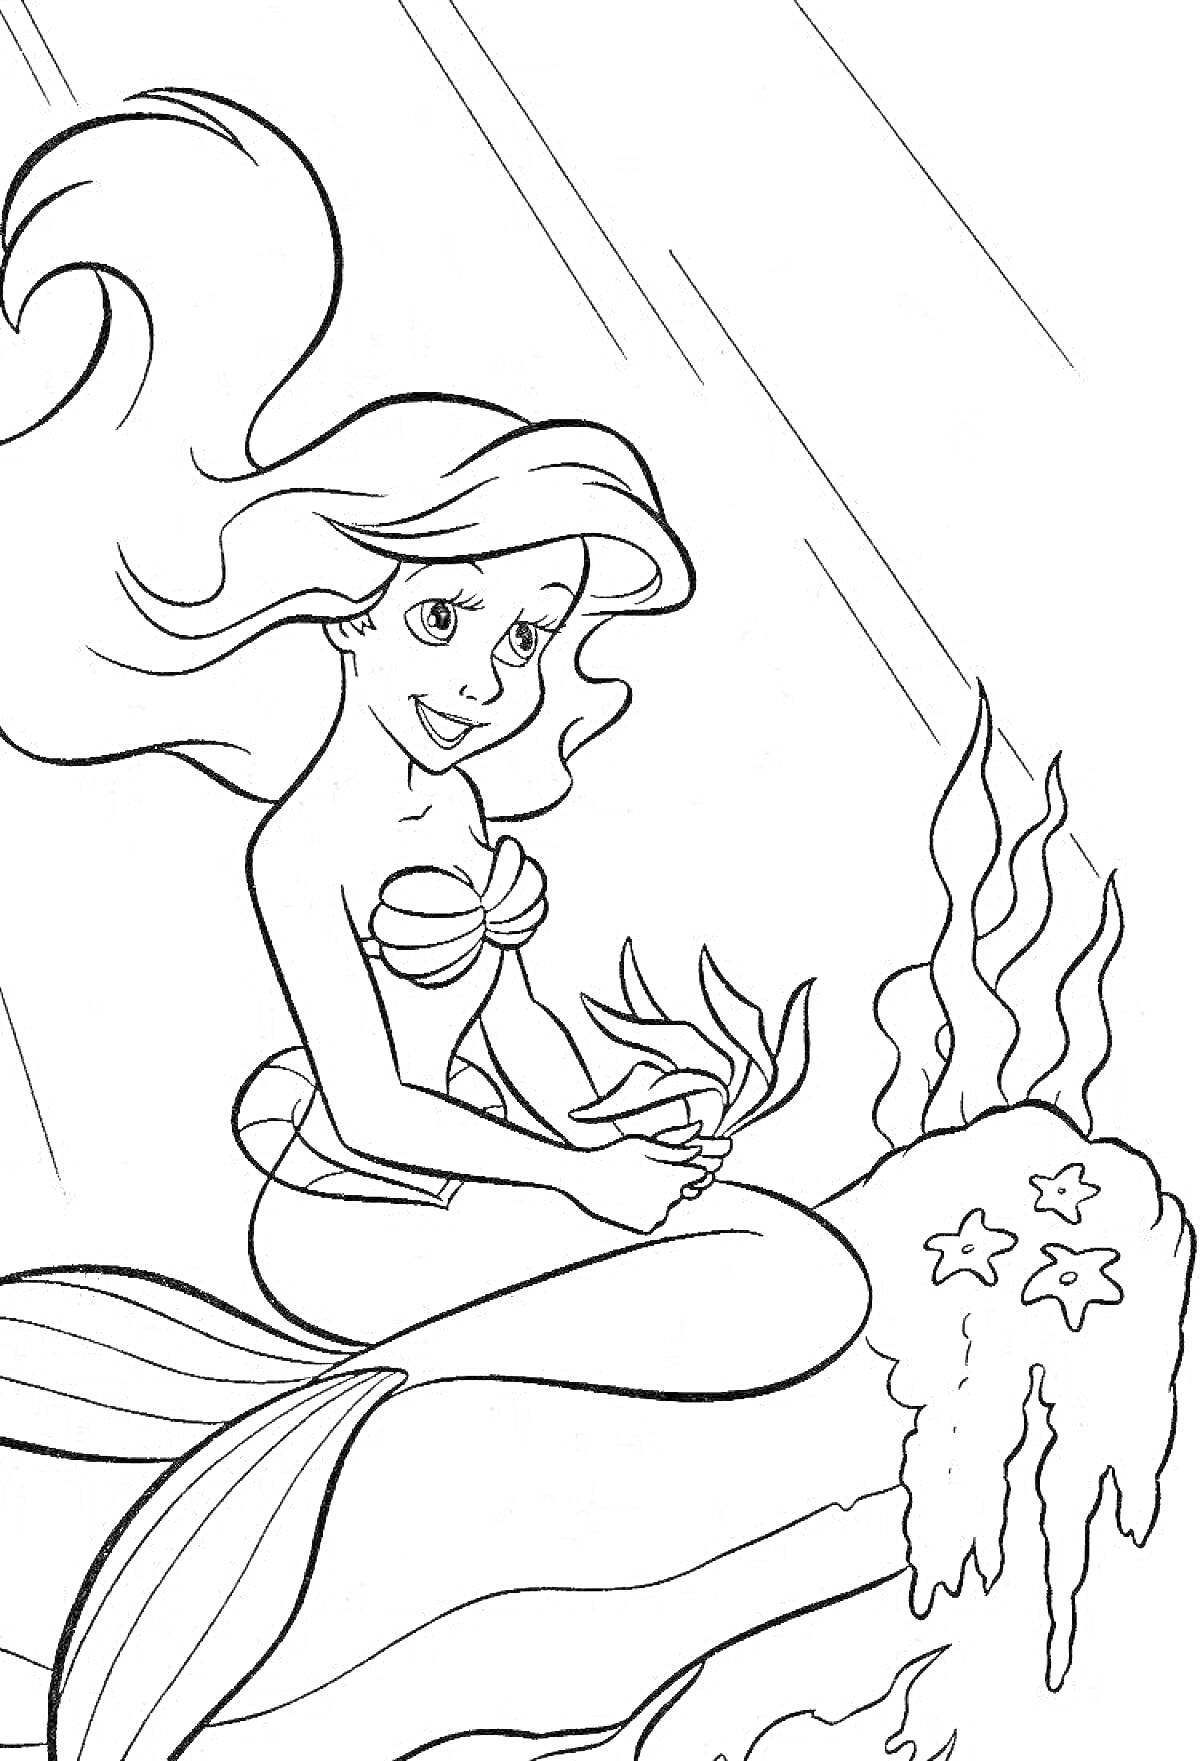 РаскраскаРусалочка сидит на камне с морскими растениями и морскими звездами